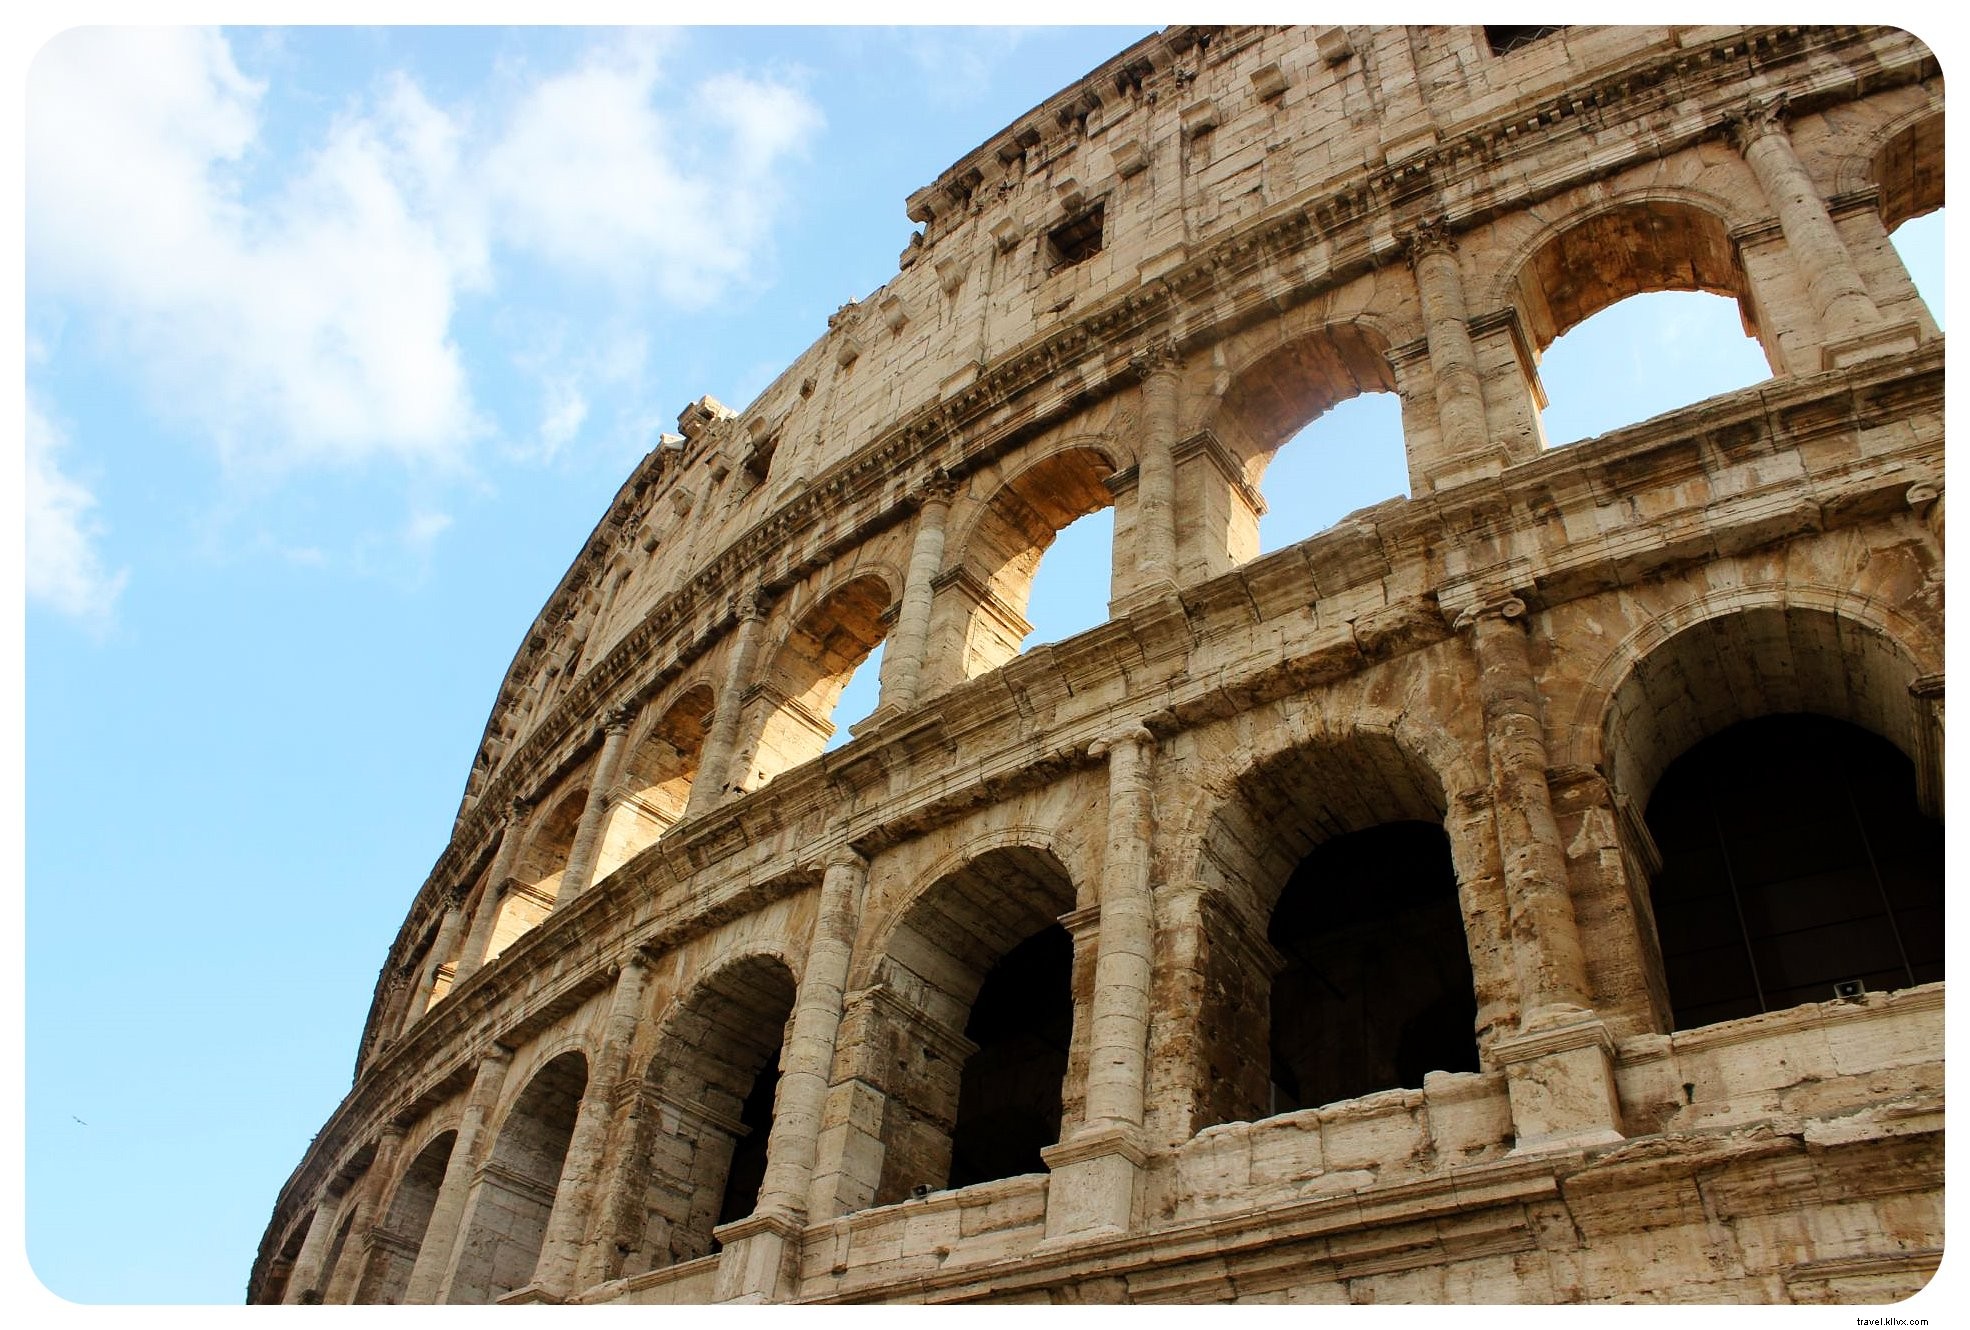 Roaming en Roma:7 consejos de expertos